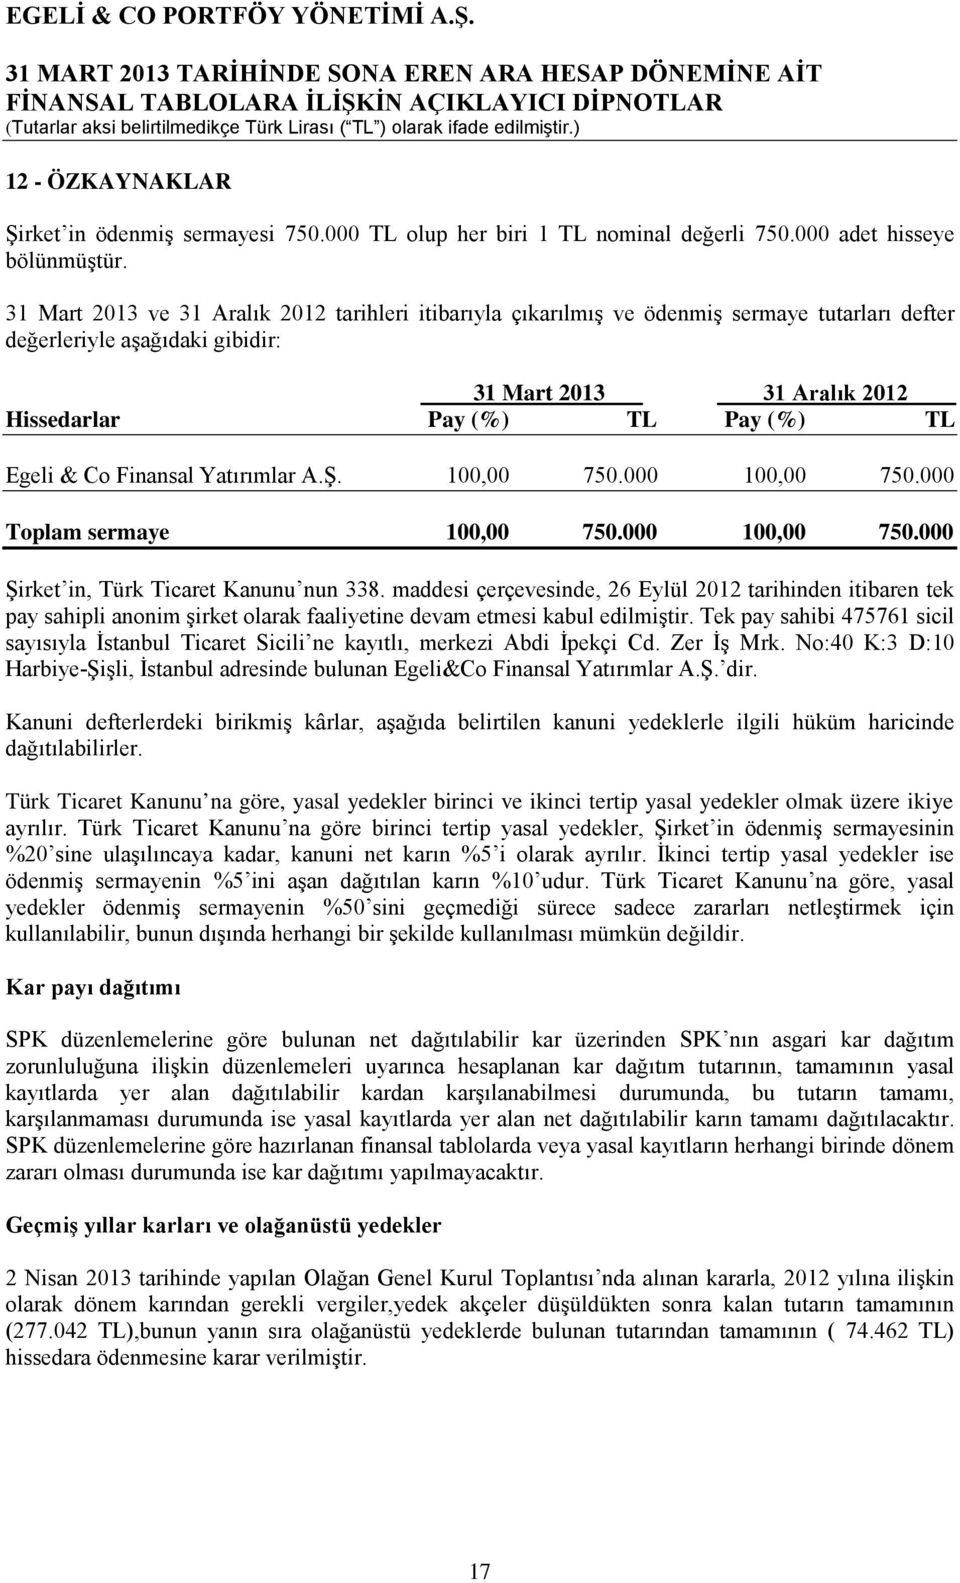 & Co Finansal Yatırımlar A.Ş. 100,00 750.000 100,00 750.000 Toplam sermaye 100,00 750.000 100,00 750.000 Şirket in, Türk Ticaret Kanunu nun 338.